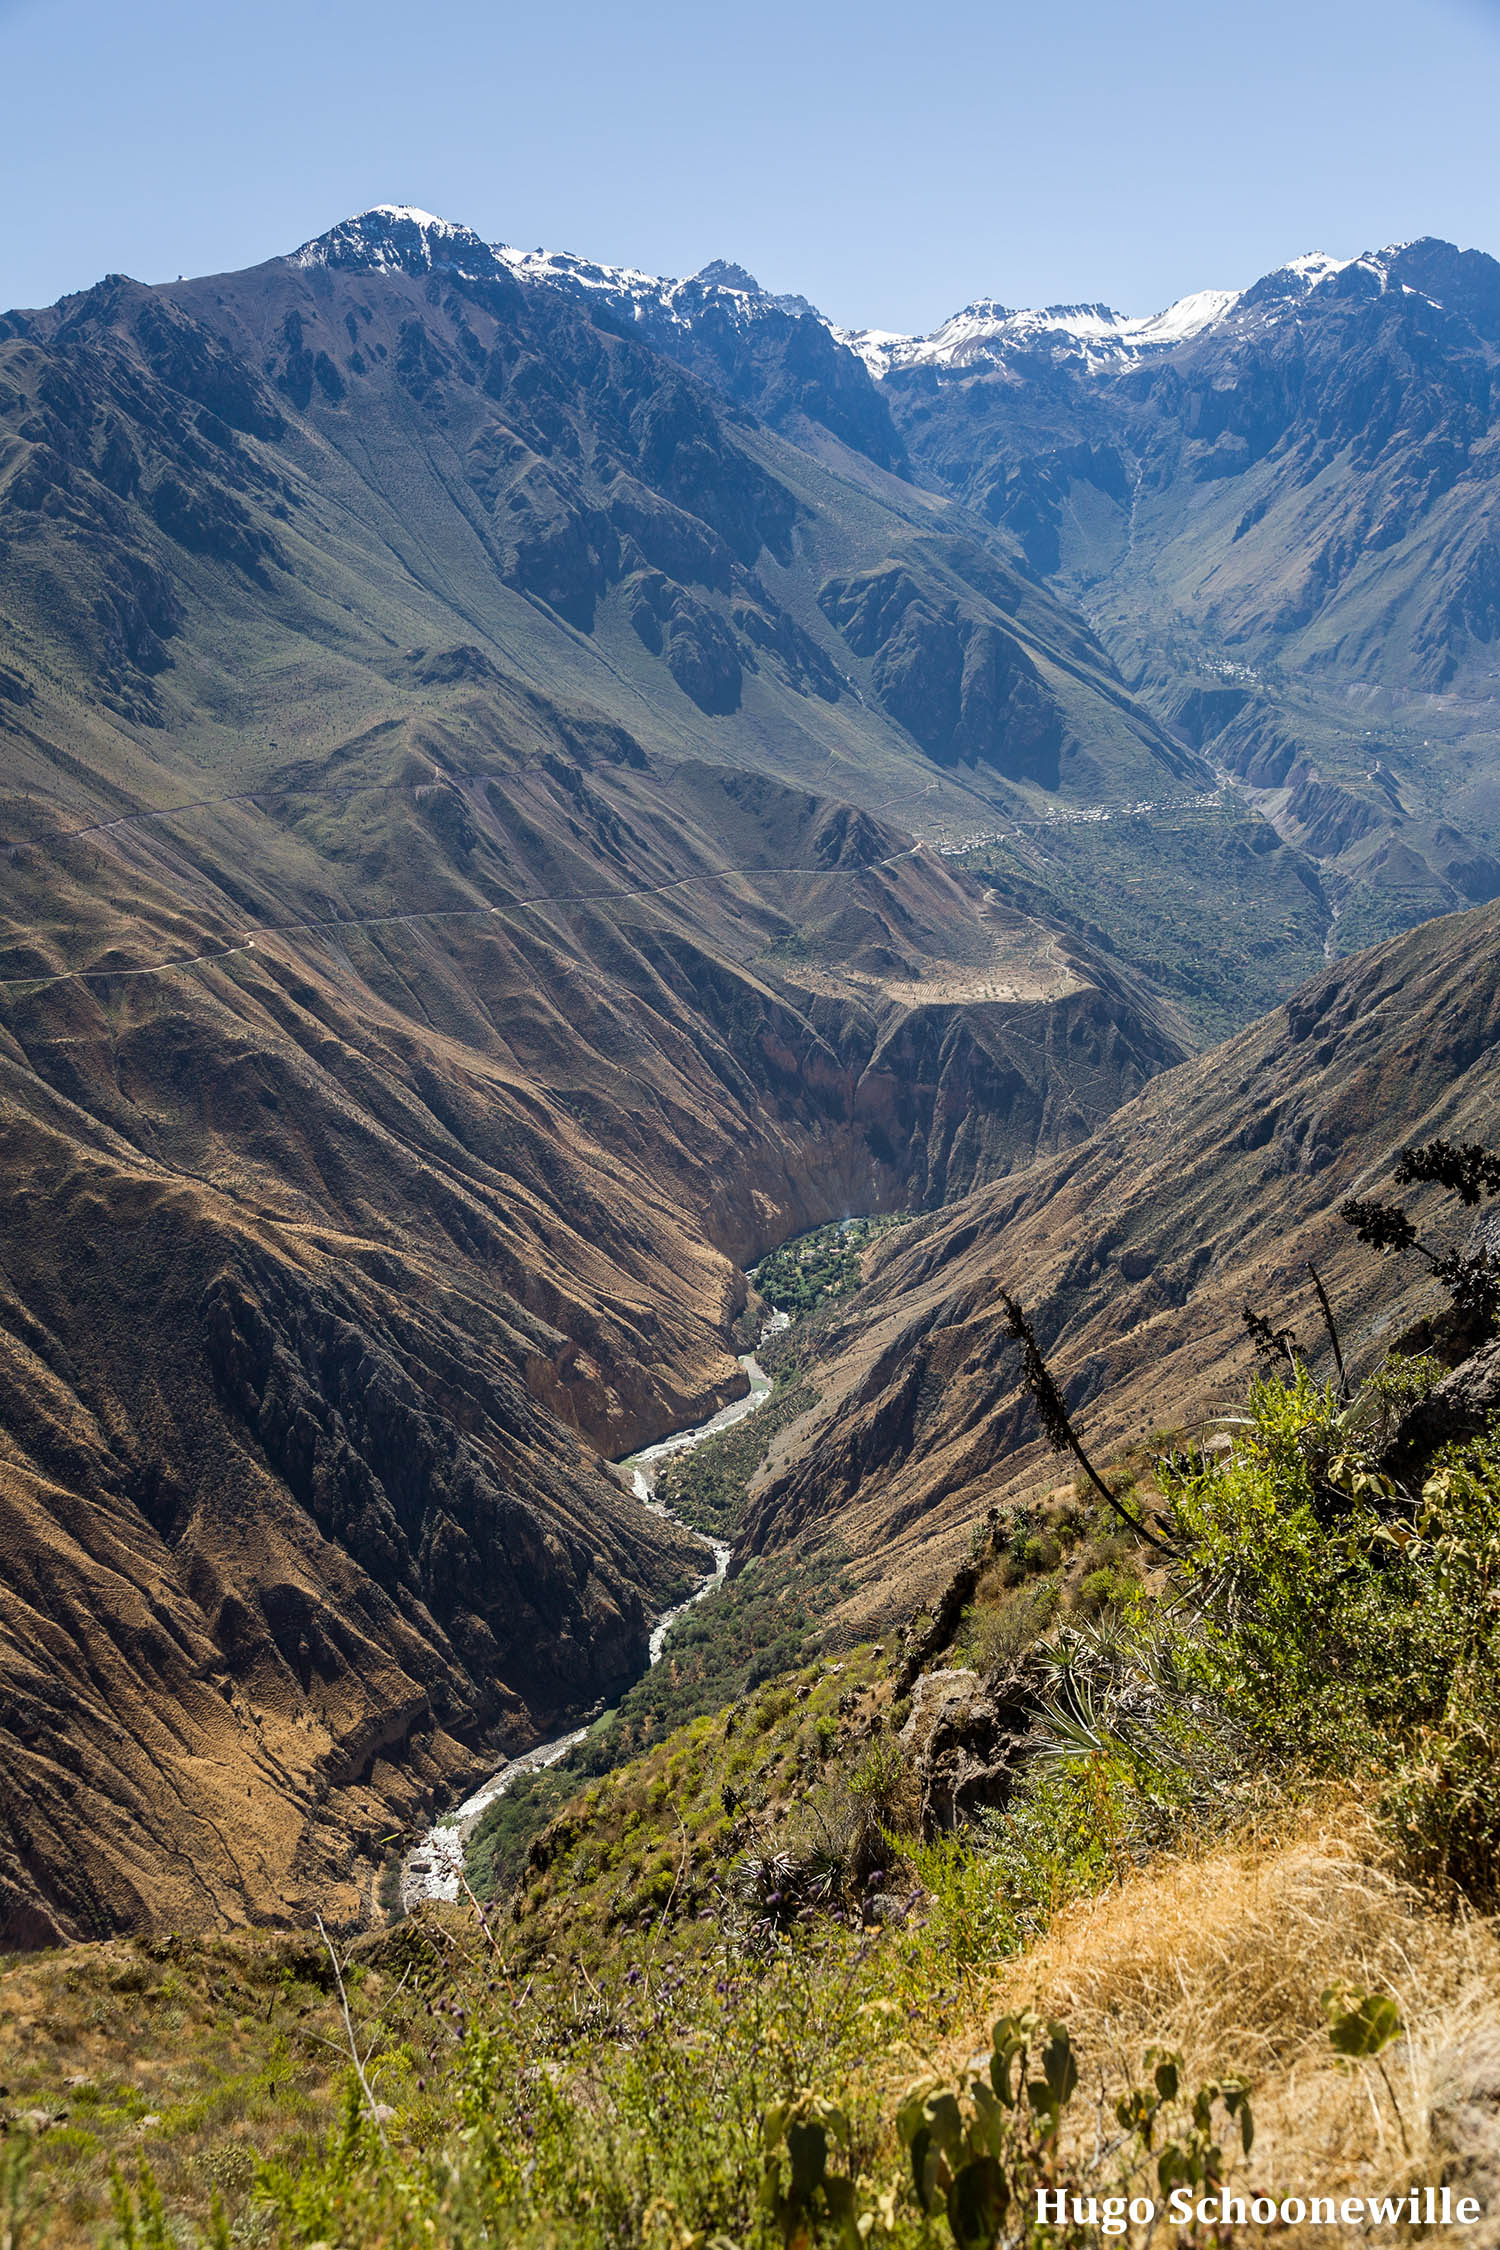 Uitzicht over de Colca Canyon in Peru met de rivier in de kloof.